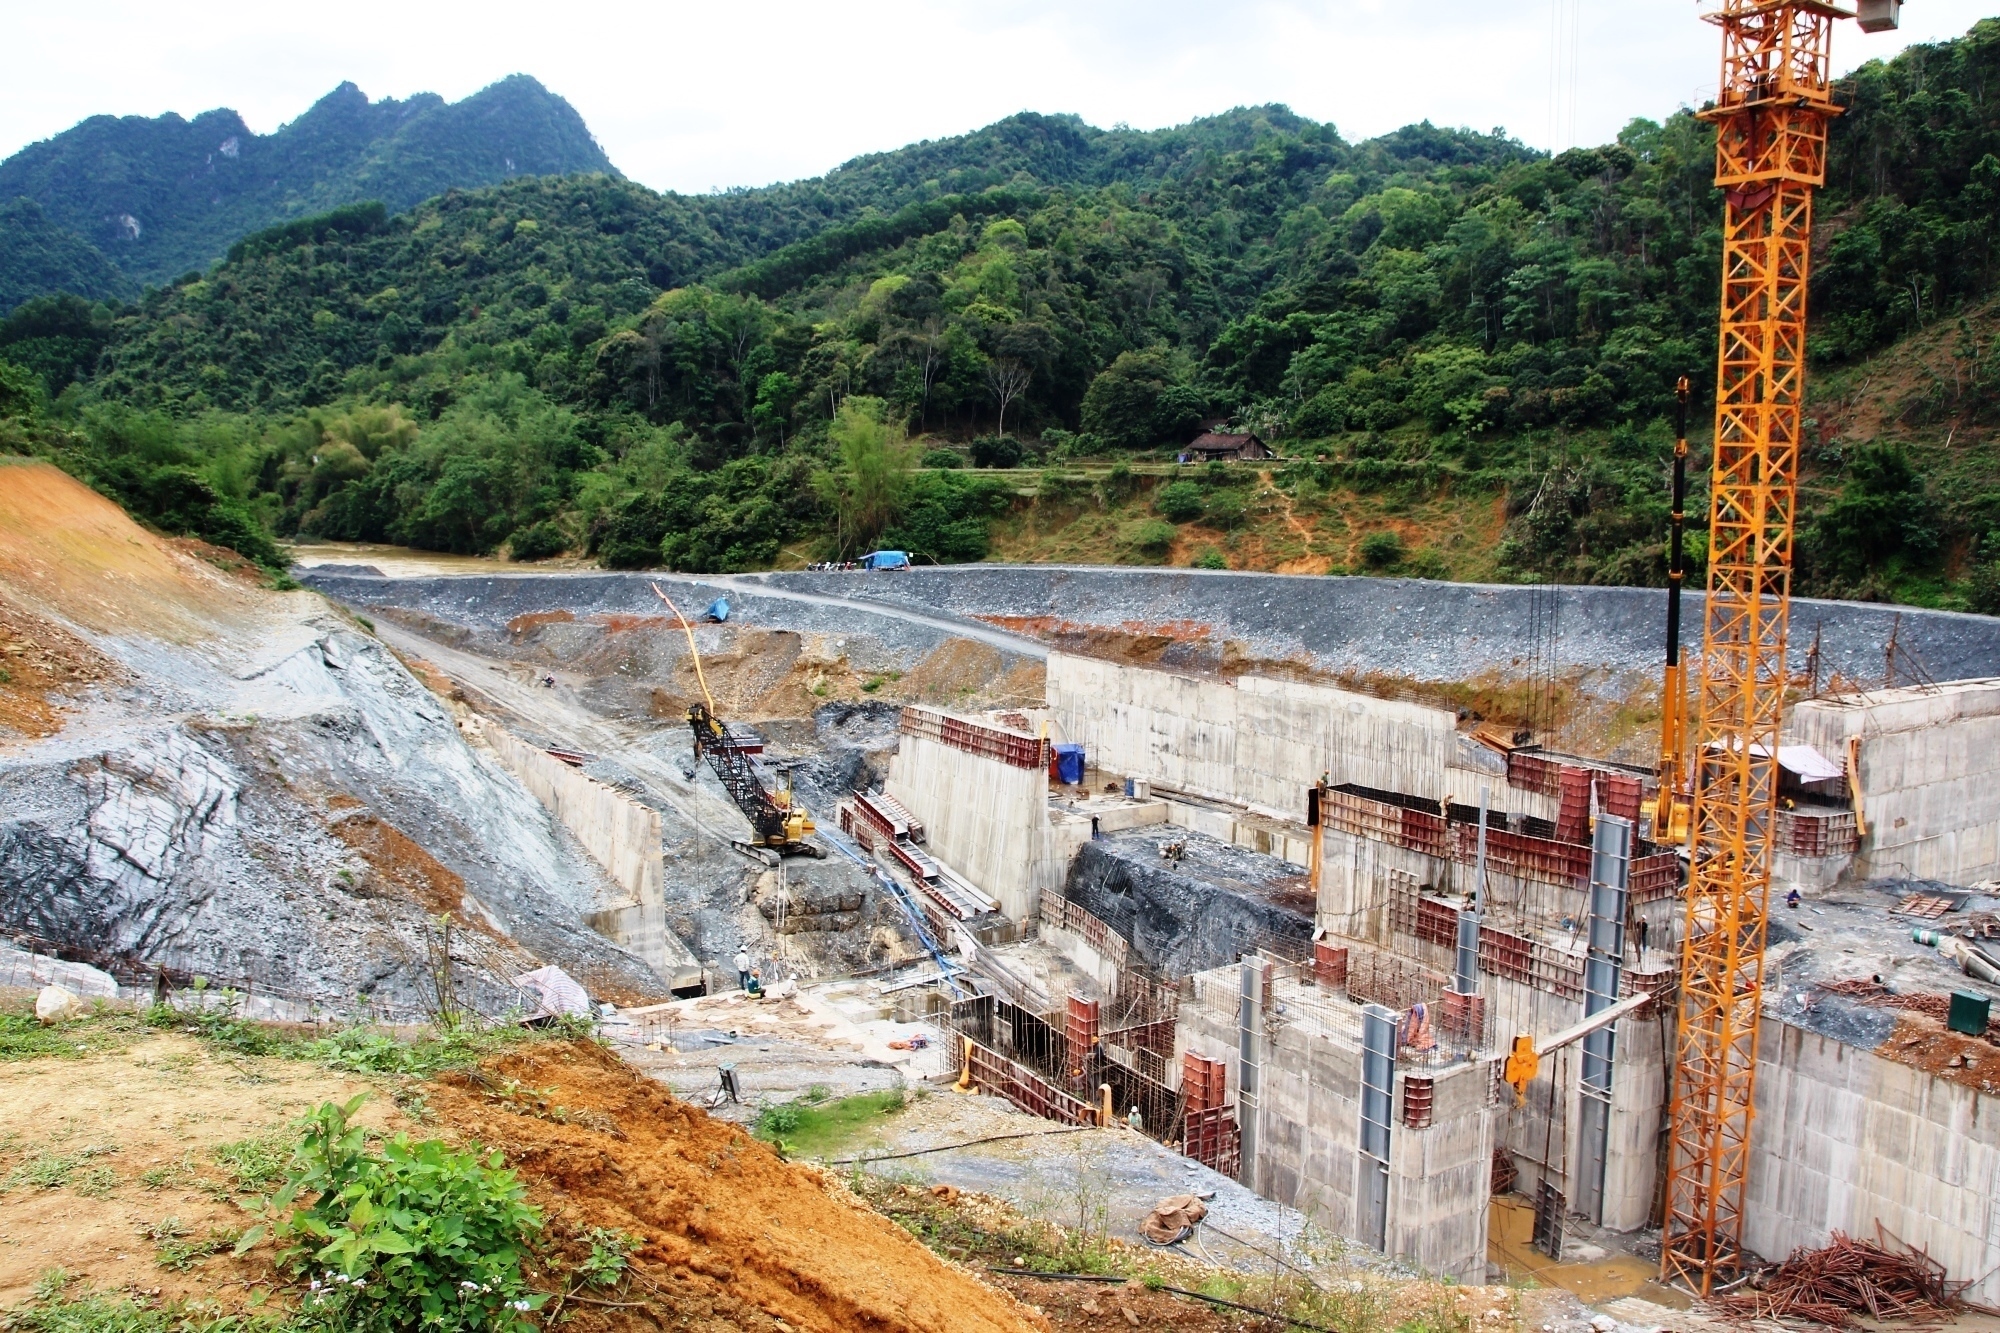 Không chỉ những dự án chung cư cao tầng, các dự án thủy điện cũng góp phần phá vỡ quy hoạch khi có không ít dòng sông cõng 4-6 dự án thủy điện, ngăn chặn dòng chảy, gây chết người, ảnh hưởng đến hạ du. (Ảnh: Hùng Võ/Vietnam+)